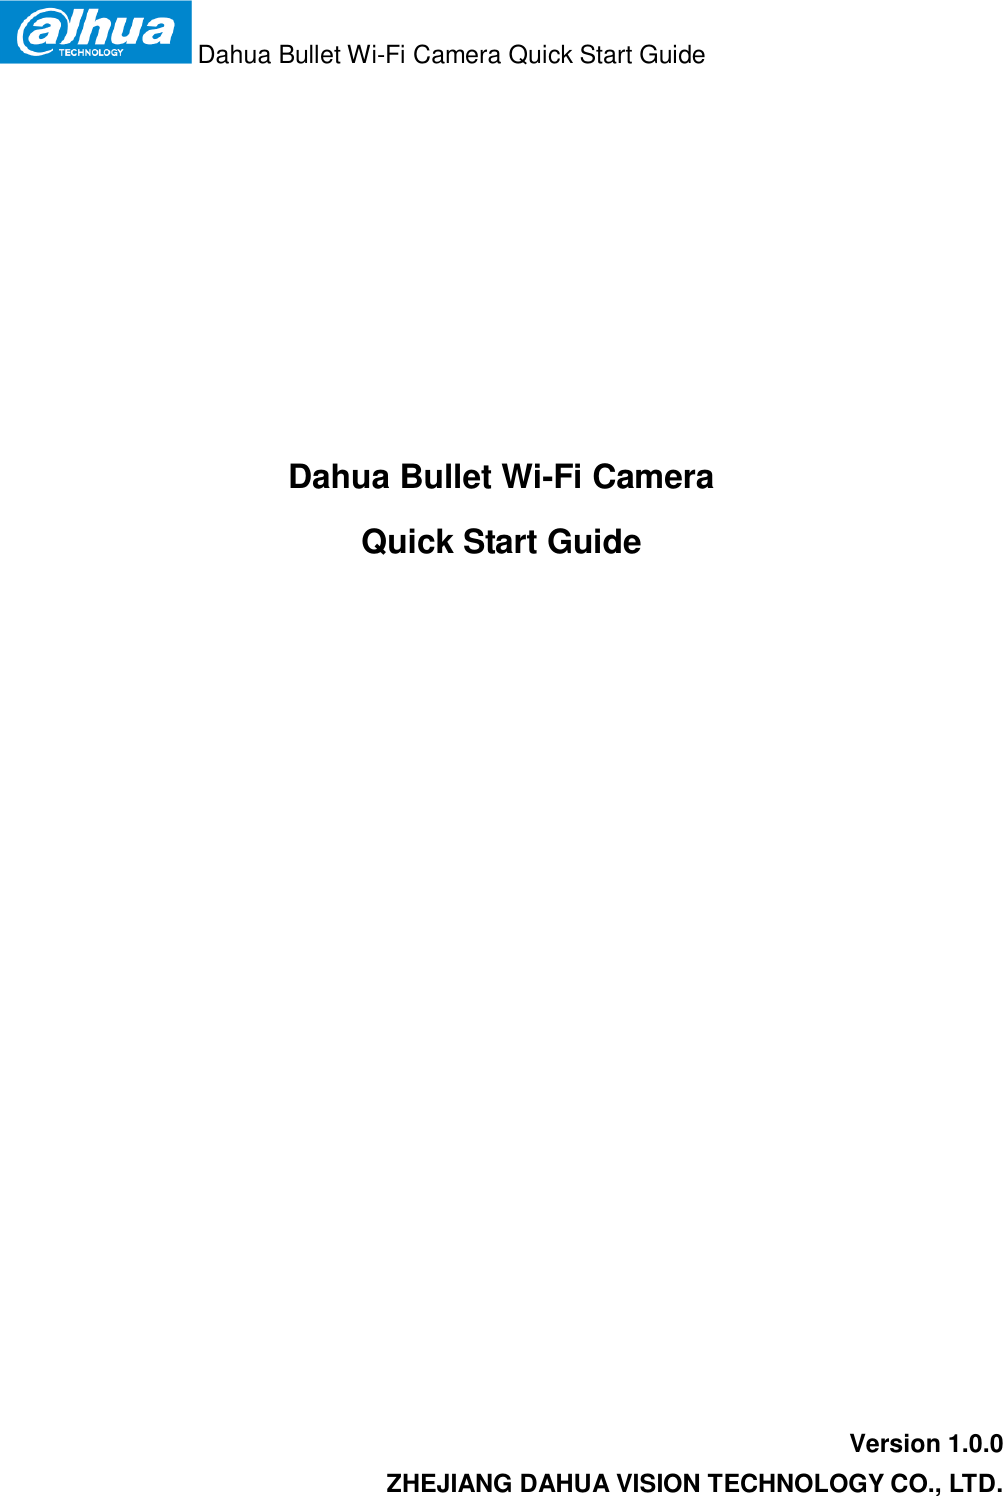  Dahua Bullet Wi-Fi Camera Quick Start Guide   Dahua Bullet Wi-Fi Camera  Quick Start Guide  Version 1.0.0 ZHEJIANG DAHUA VISION TECHNOLOGY CO., LTD. 